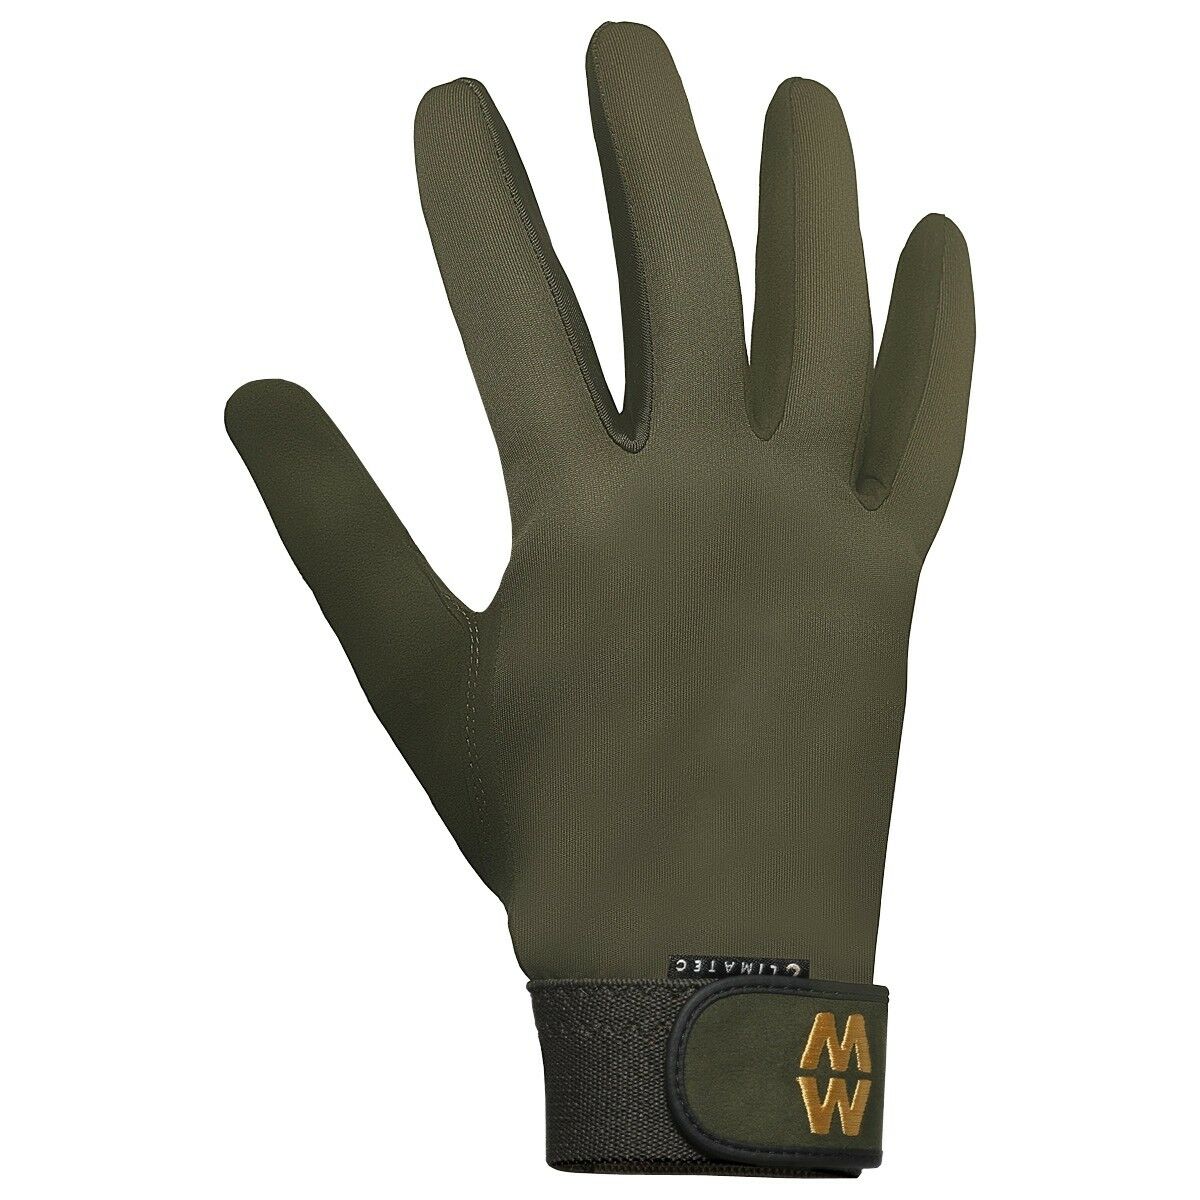 MacWet Climatec Long-Cuff Gloves - Green